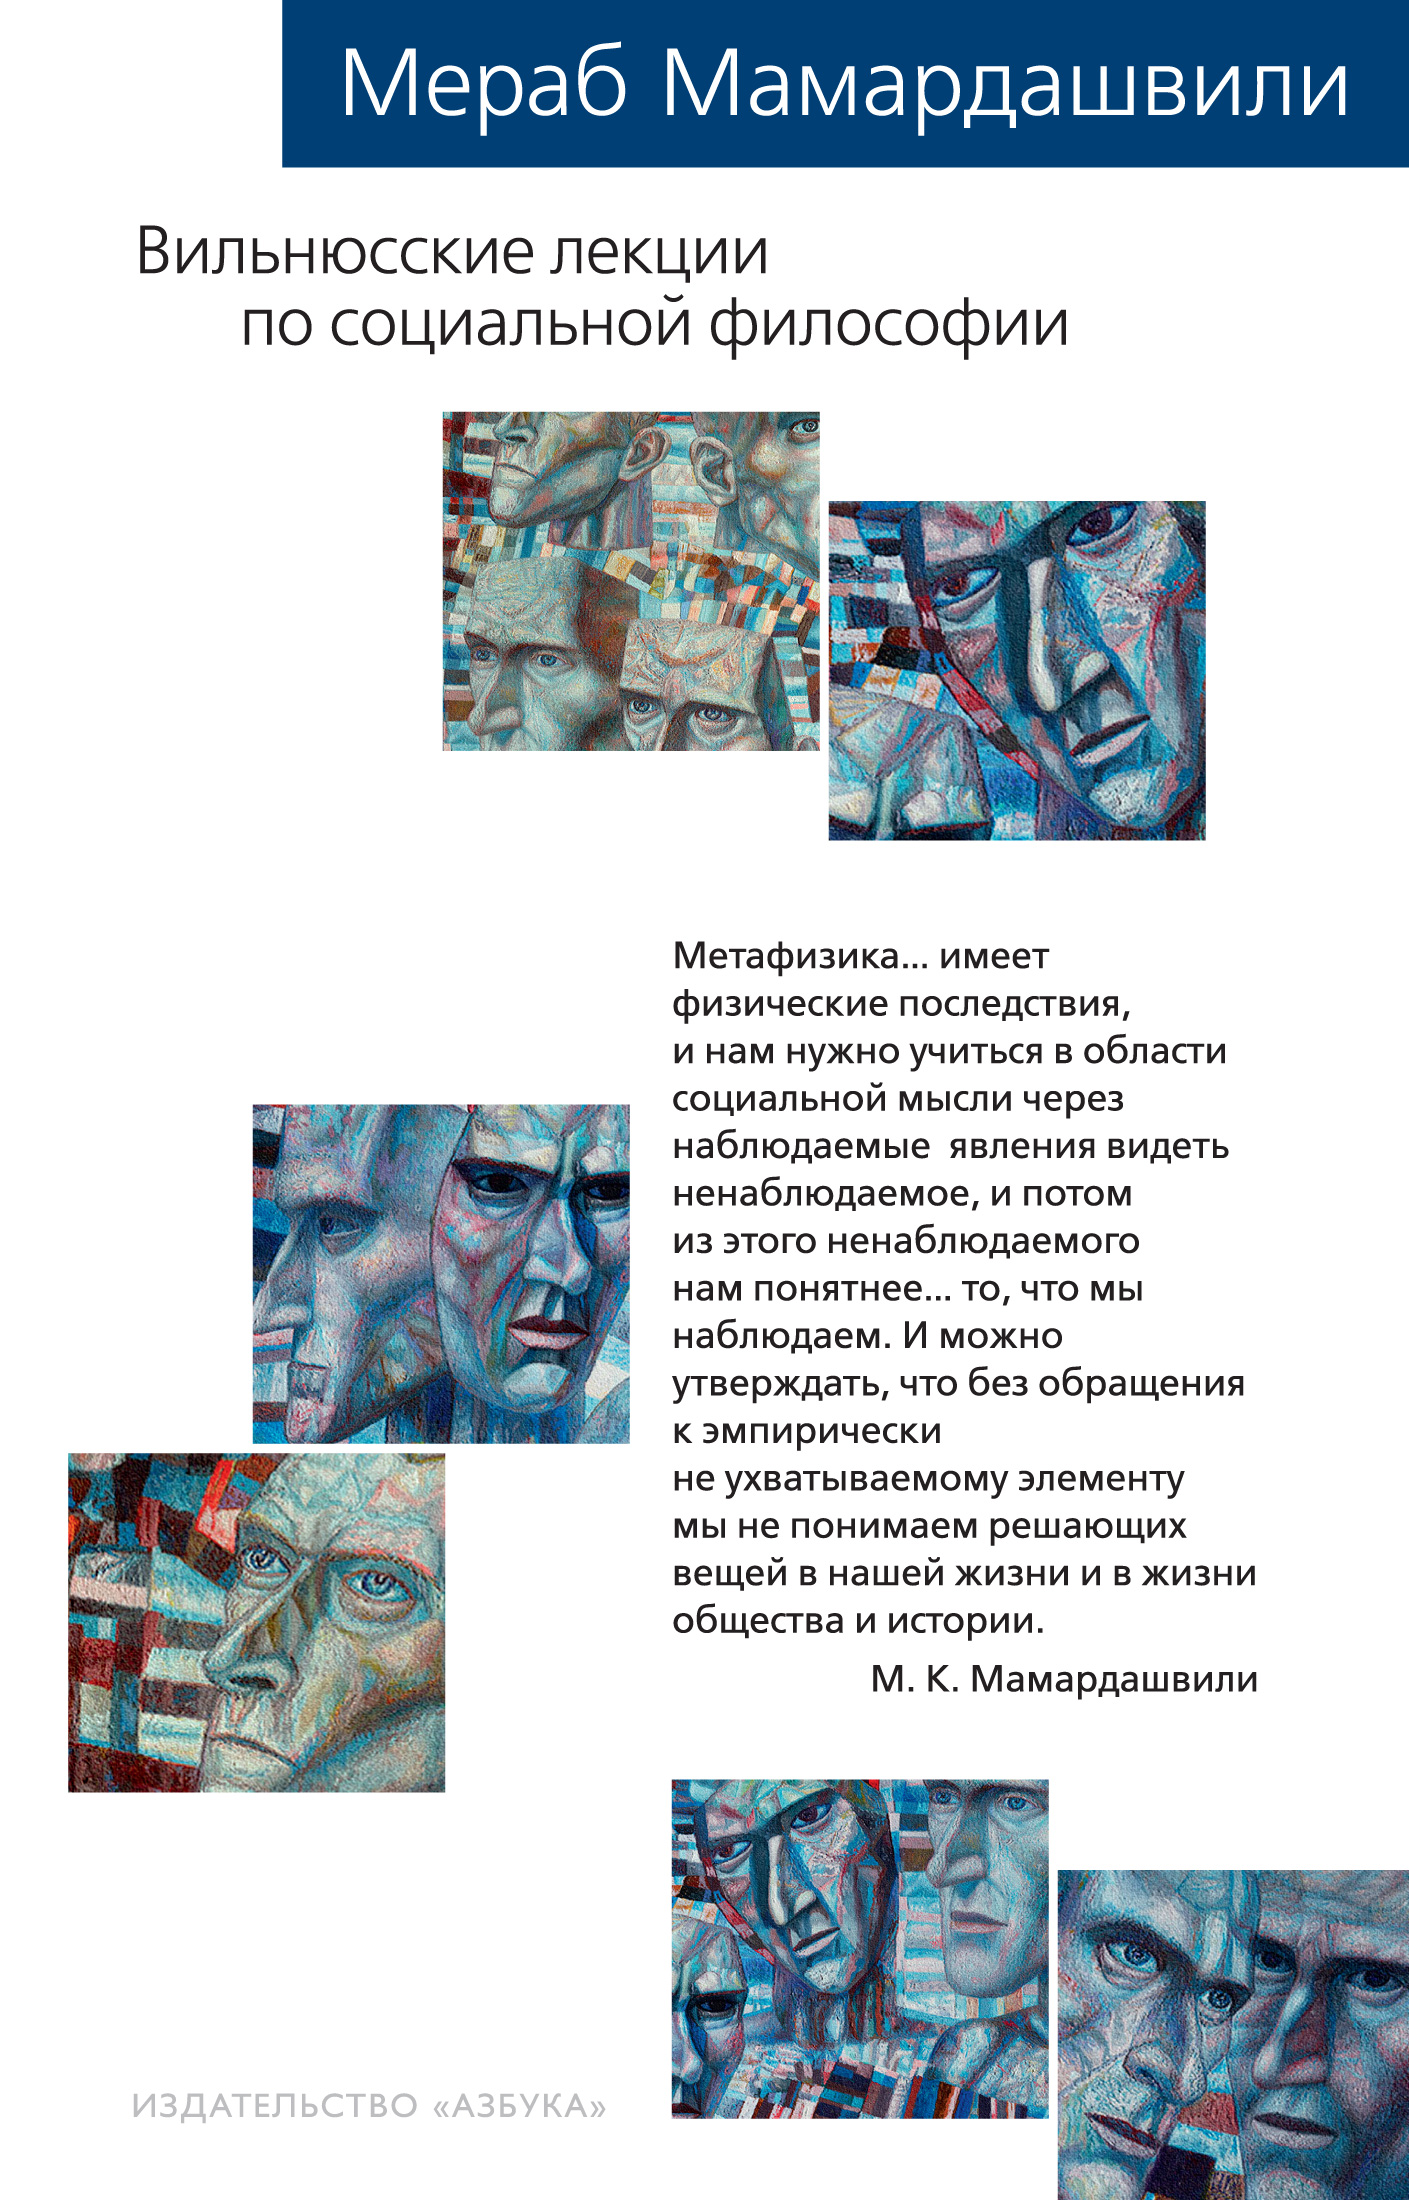 Вильнюсские лекции по социальной философии мамардашвили мераб константинович вильнюсские лекции по социальной философии опыт физической метафизики